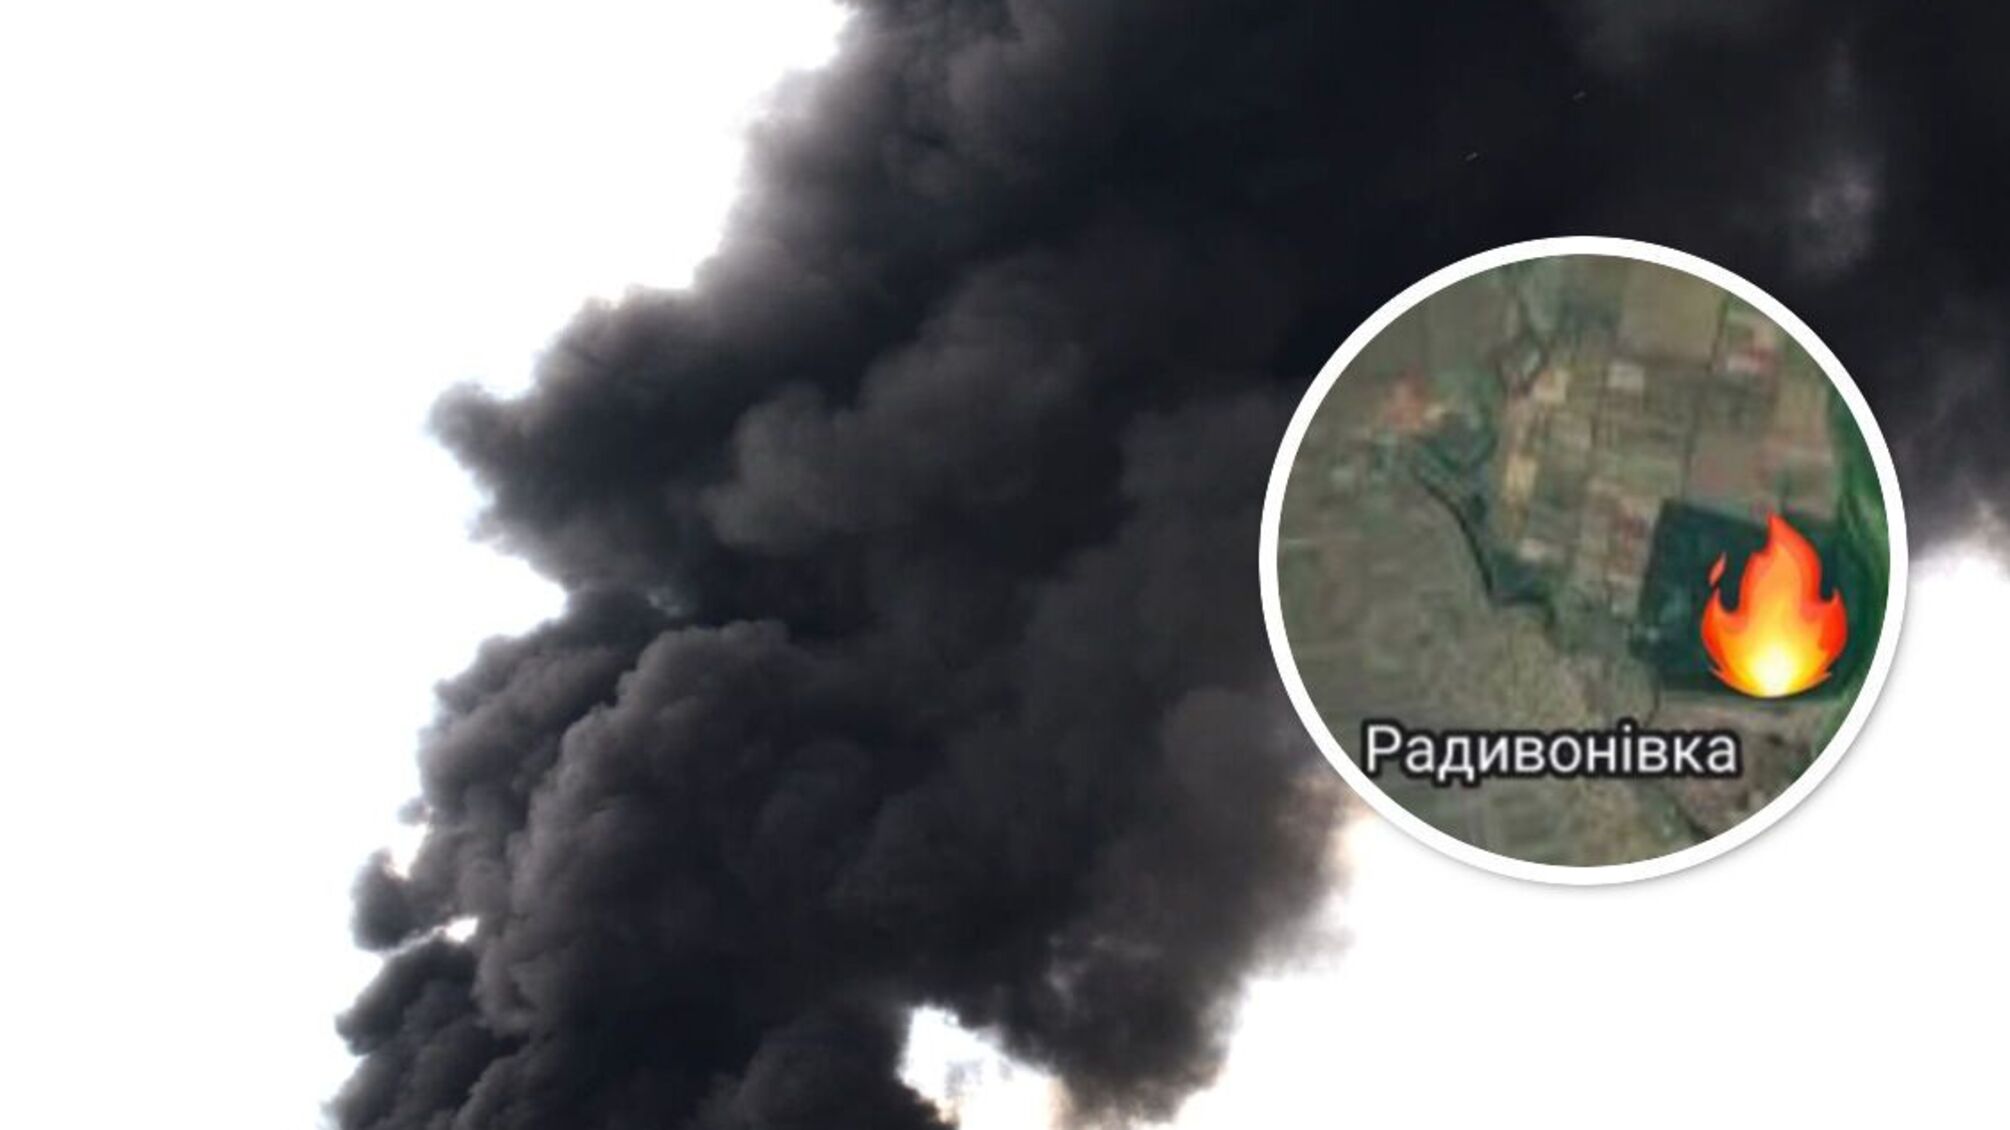 Минус вражеская база под Мелитополем: мэр Федоров рассказал о последствиях 'опасного курения'